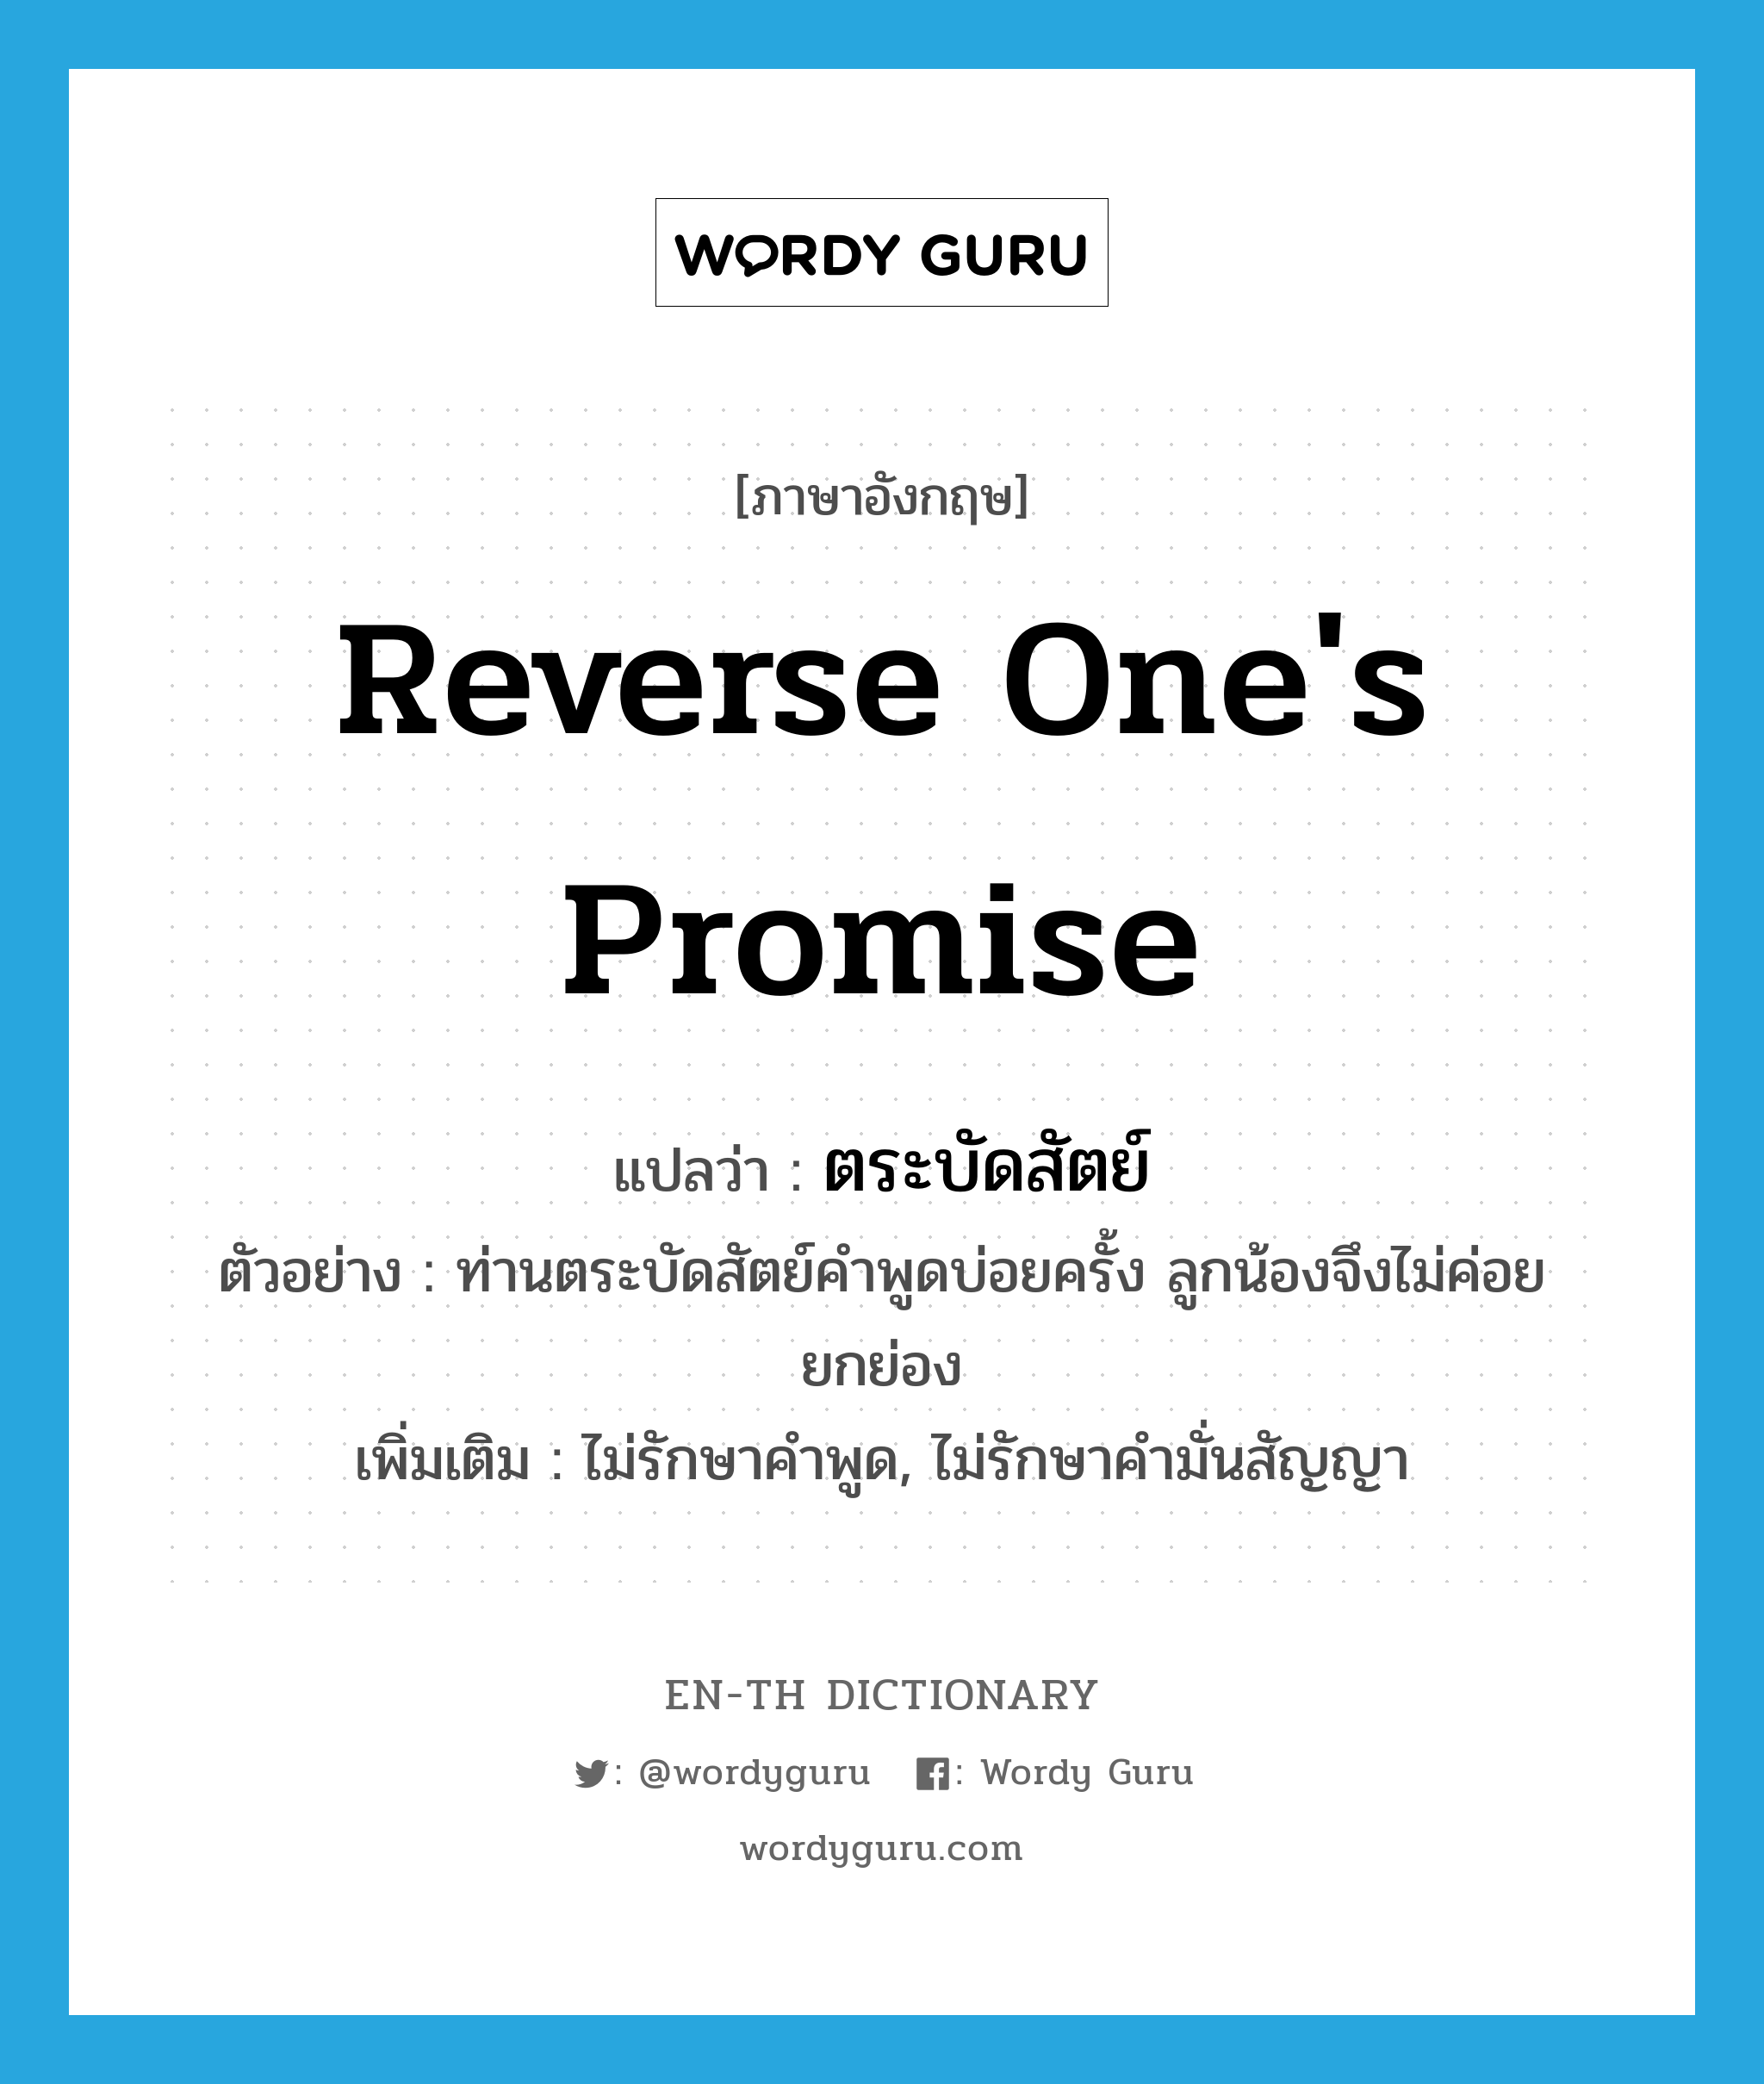 reverse one's promise แปลว่า?, คำศัพท์ภาษาอังกฤษ reverse one's promise แปลว่า ตระบัดสัตย์ ประเภท V ตัวอย่าง ท่านตระบัดสัตย์คำพูดบ่อยครั้ง ลูกน้องจึงไม่ค่อยยกย่อง เพิ่มเติม ไม่รักษาคำพูด, ไม่รักษาคำมั่นสัญญา หมวด V